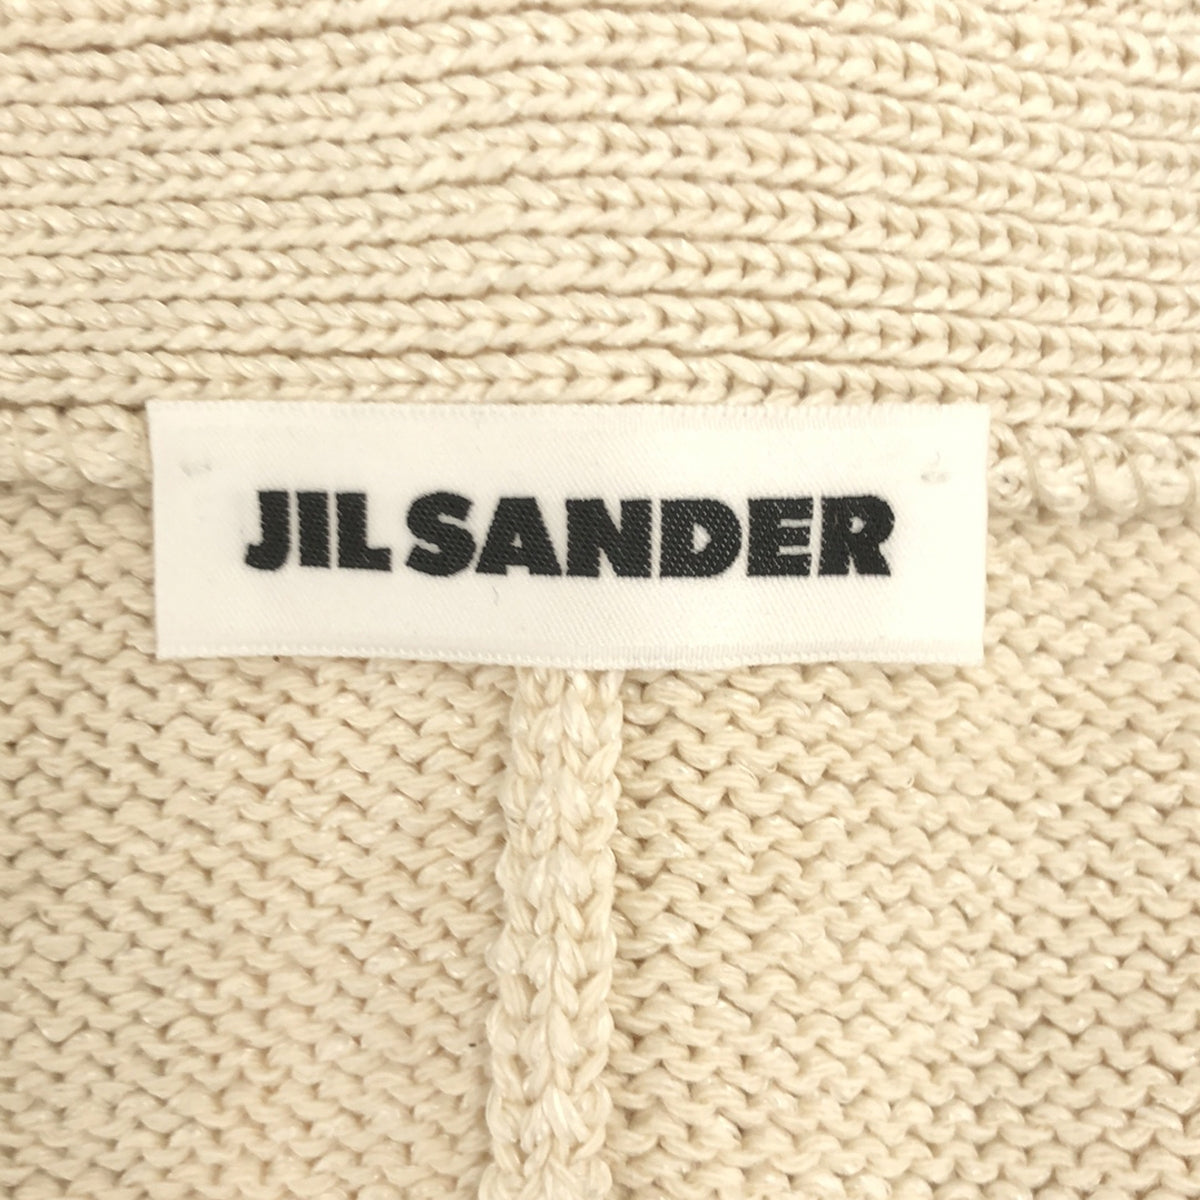 JIL SANDER / ジルサンダー | リーフディテール カーディガン | 34 | レディース